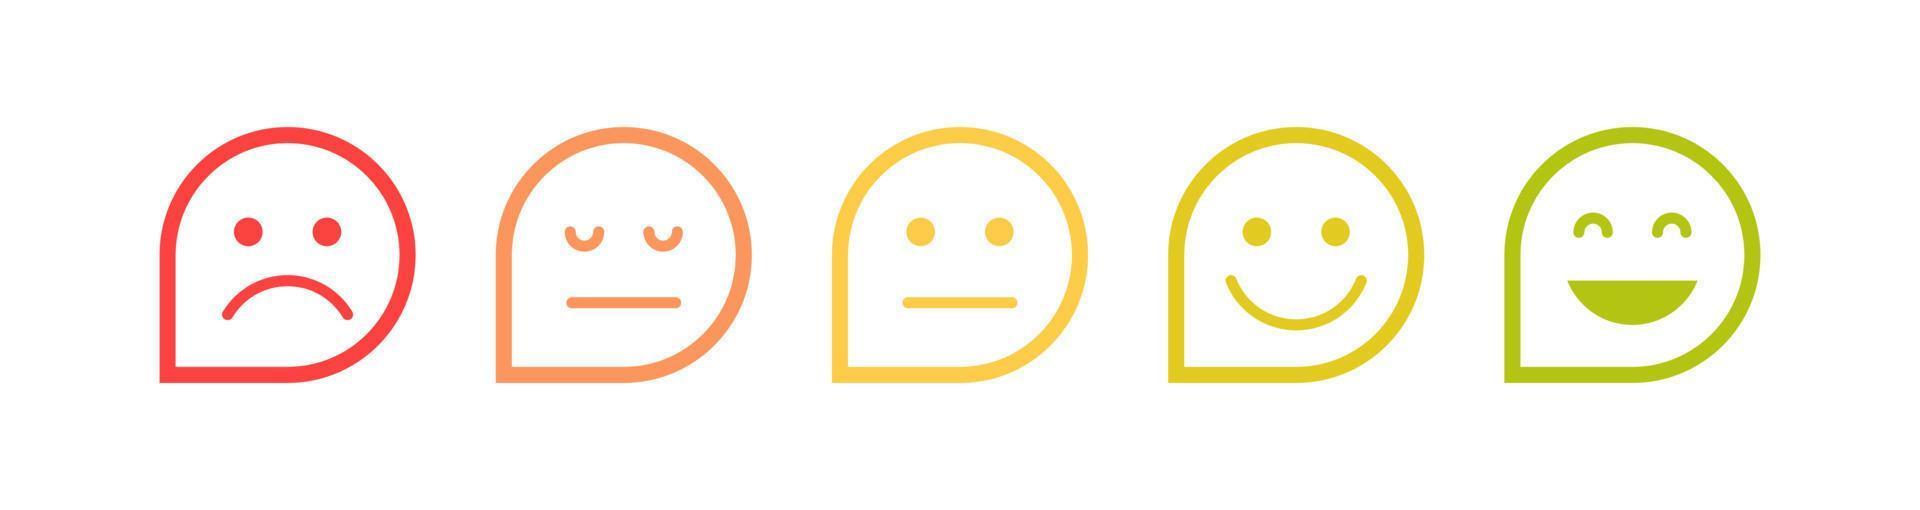 feedback dei clienti espressioni facciali ed espressioni semplici diverse illustrazioni vettoriali piatte del sorriso dei cartoni animati.